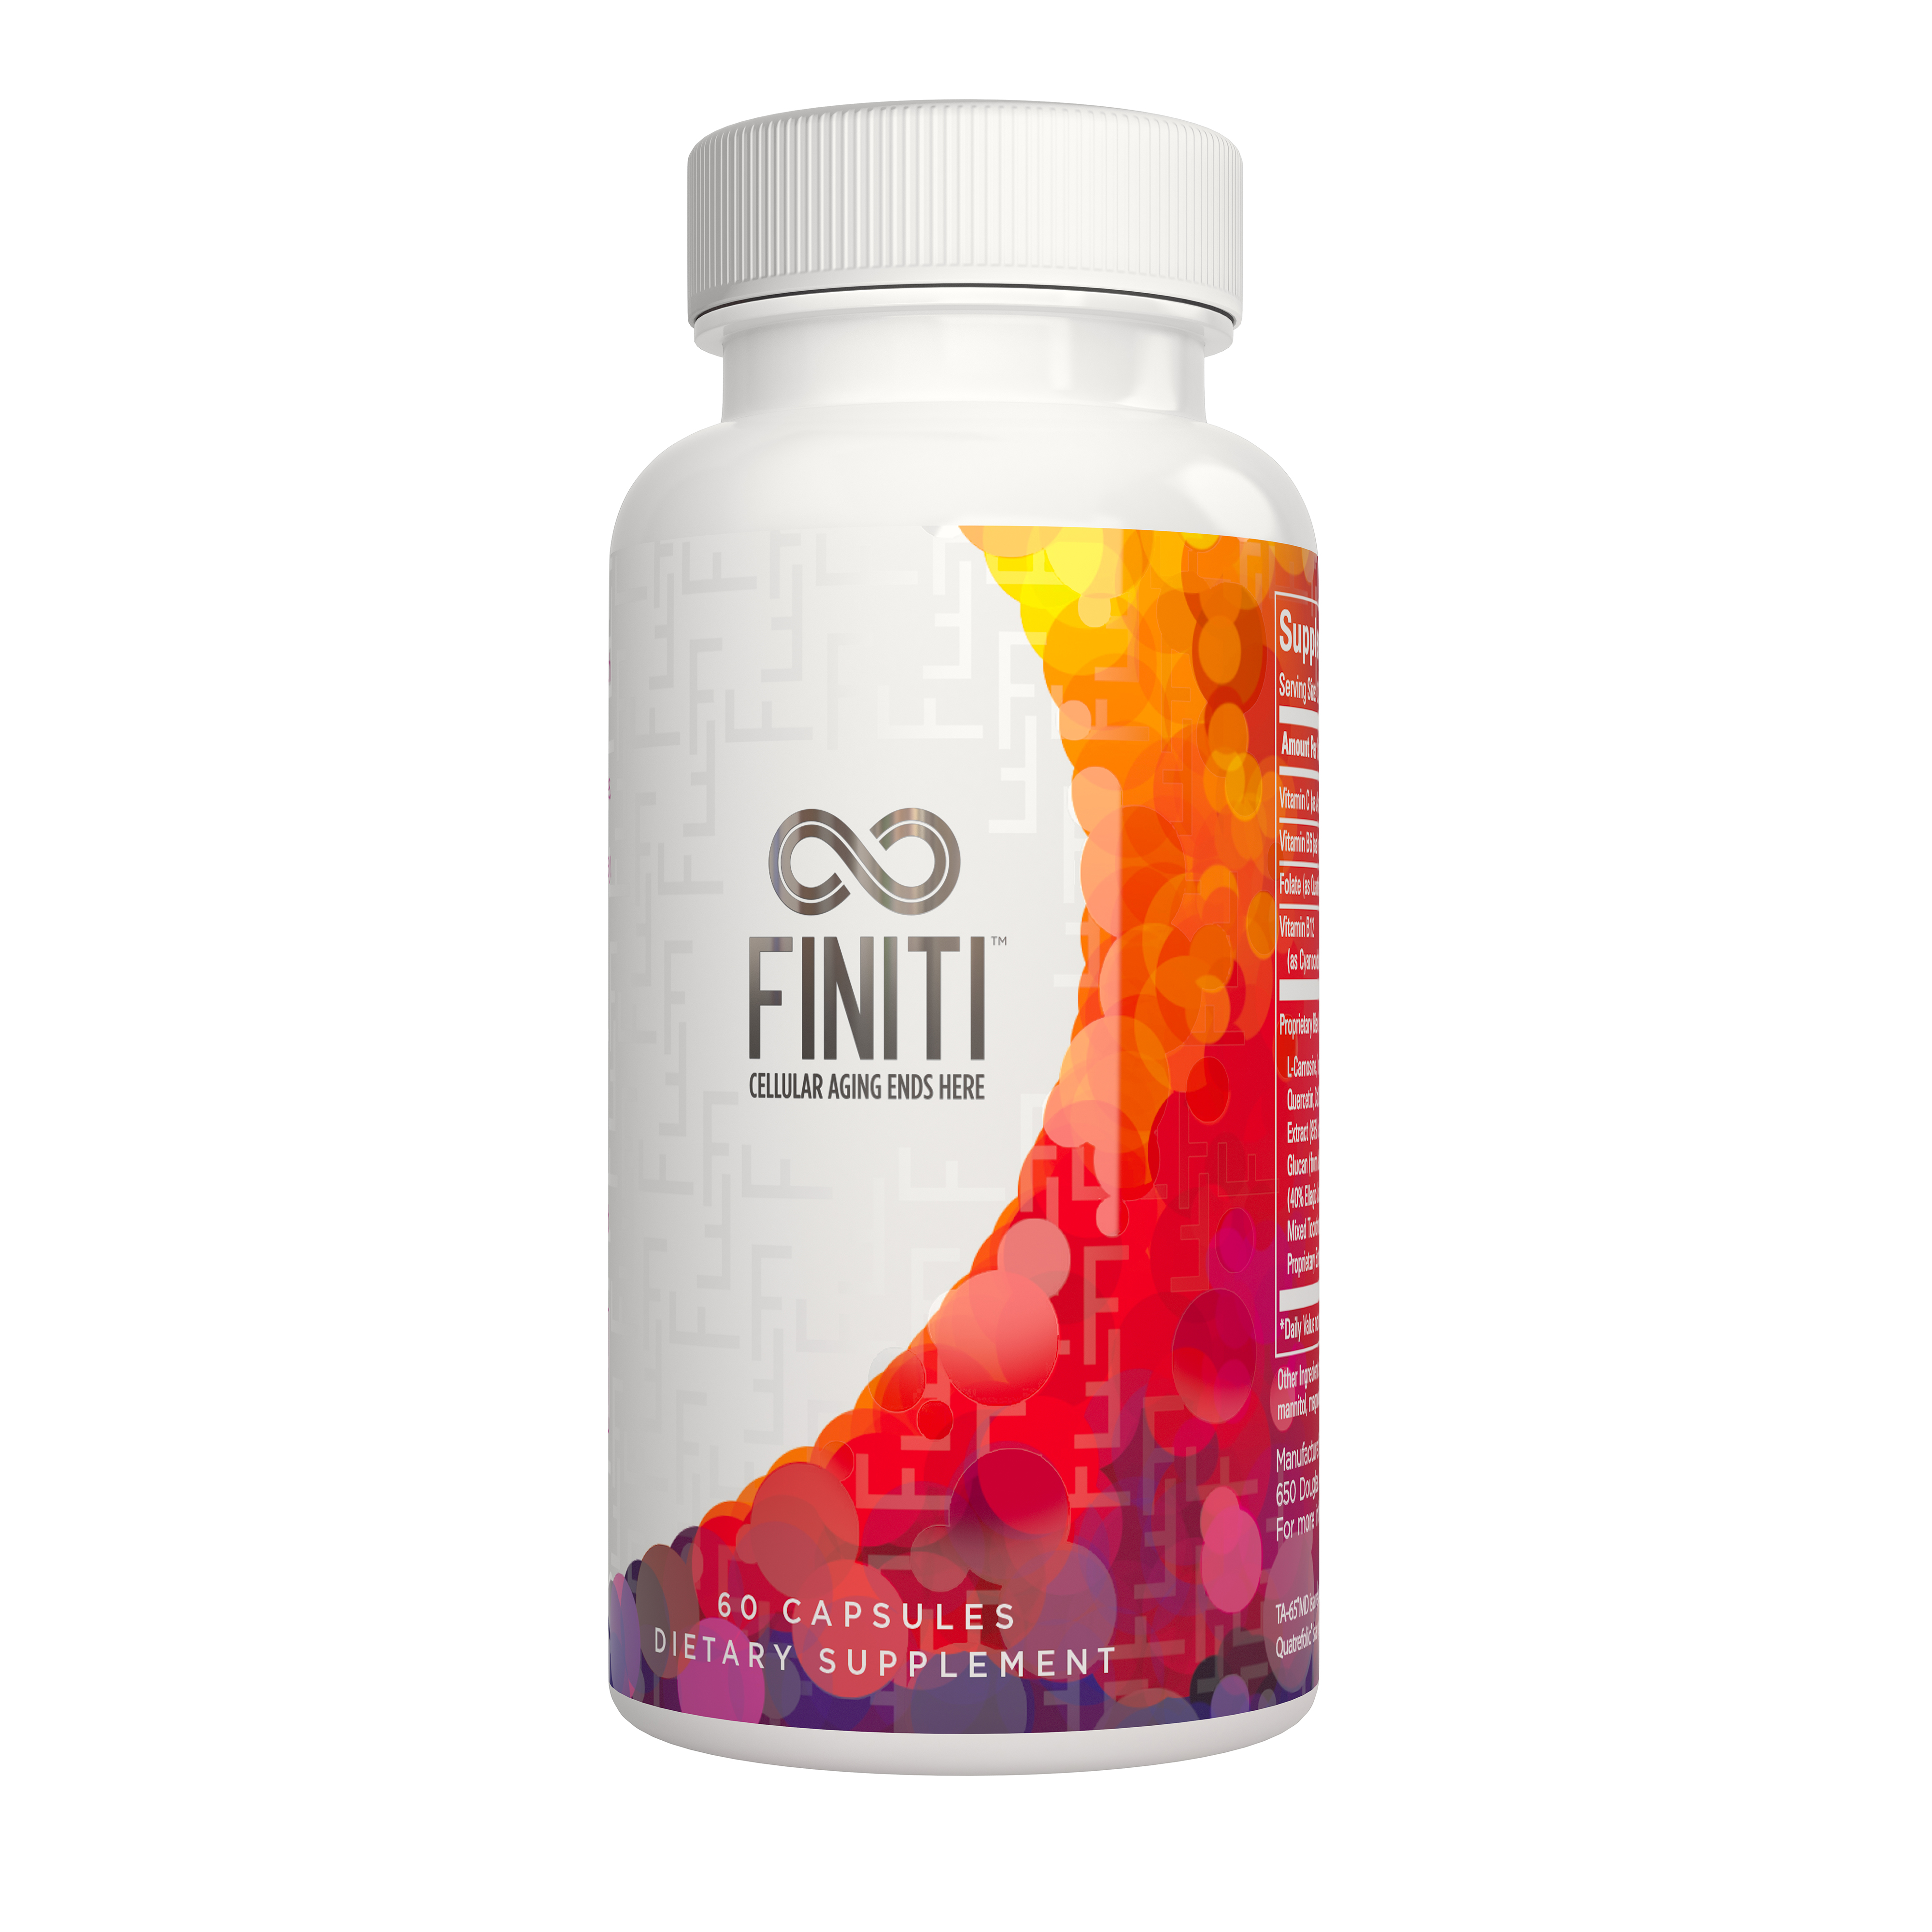 פיניטי | Finiti - מוצר יחידי שפותח על ידי מדענים (התגלית זכתה בפרס נובל לרפואה בשנת 2009)  וביכולתו להאריך את הטלומרים ולהגן על ה- DNA. לבריאות מיטבית ולאריכות שנים